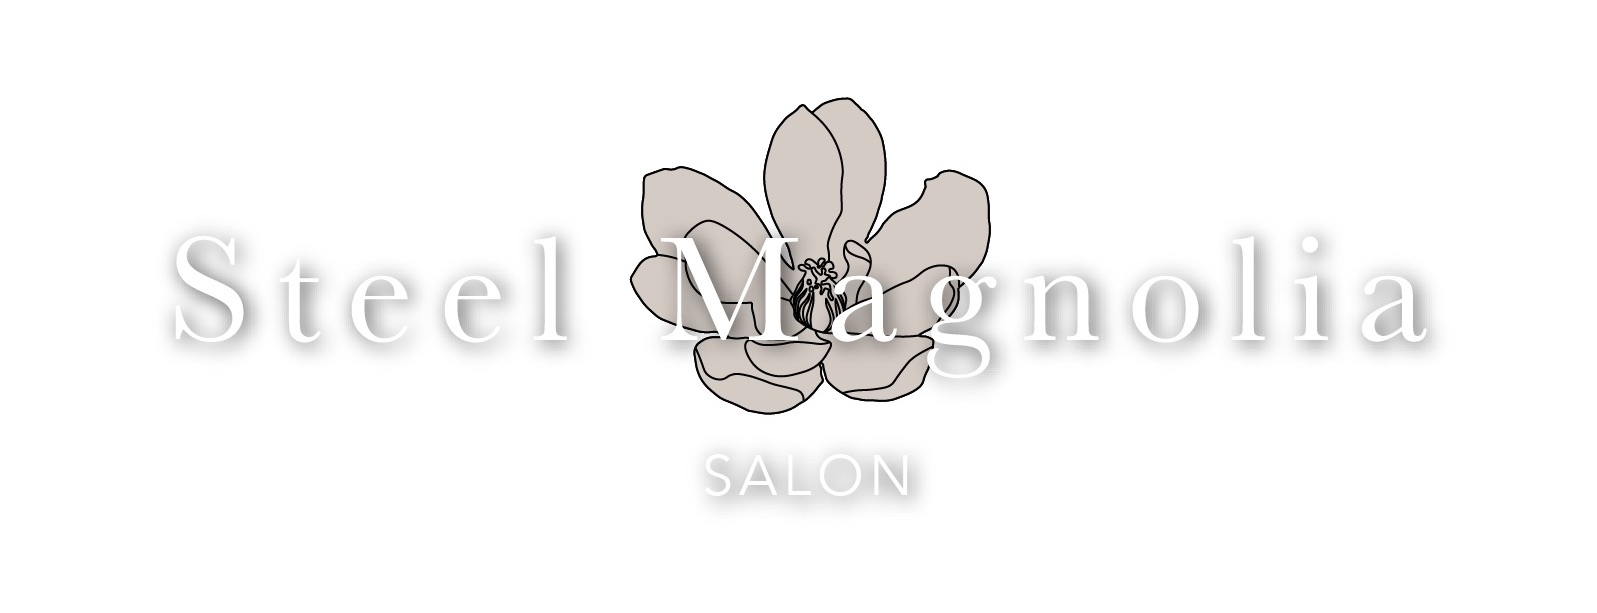 Steel Magnolia Salon